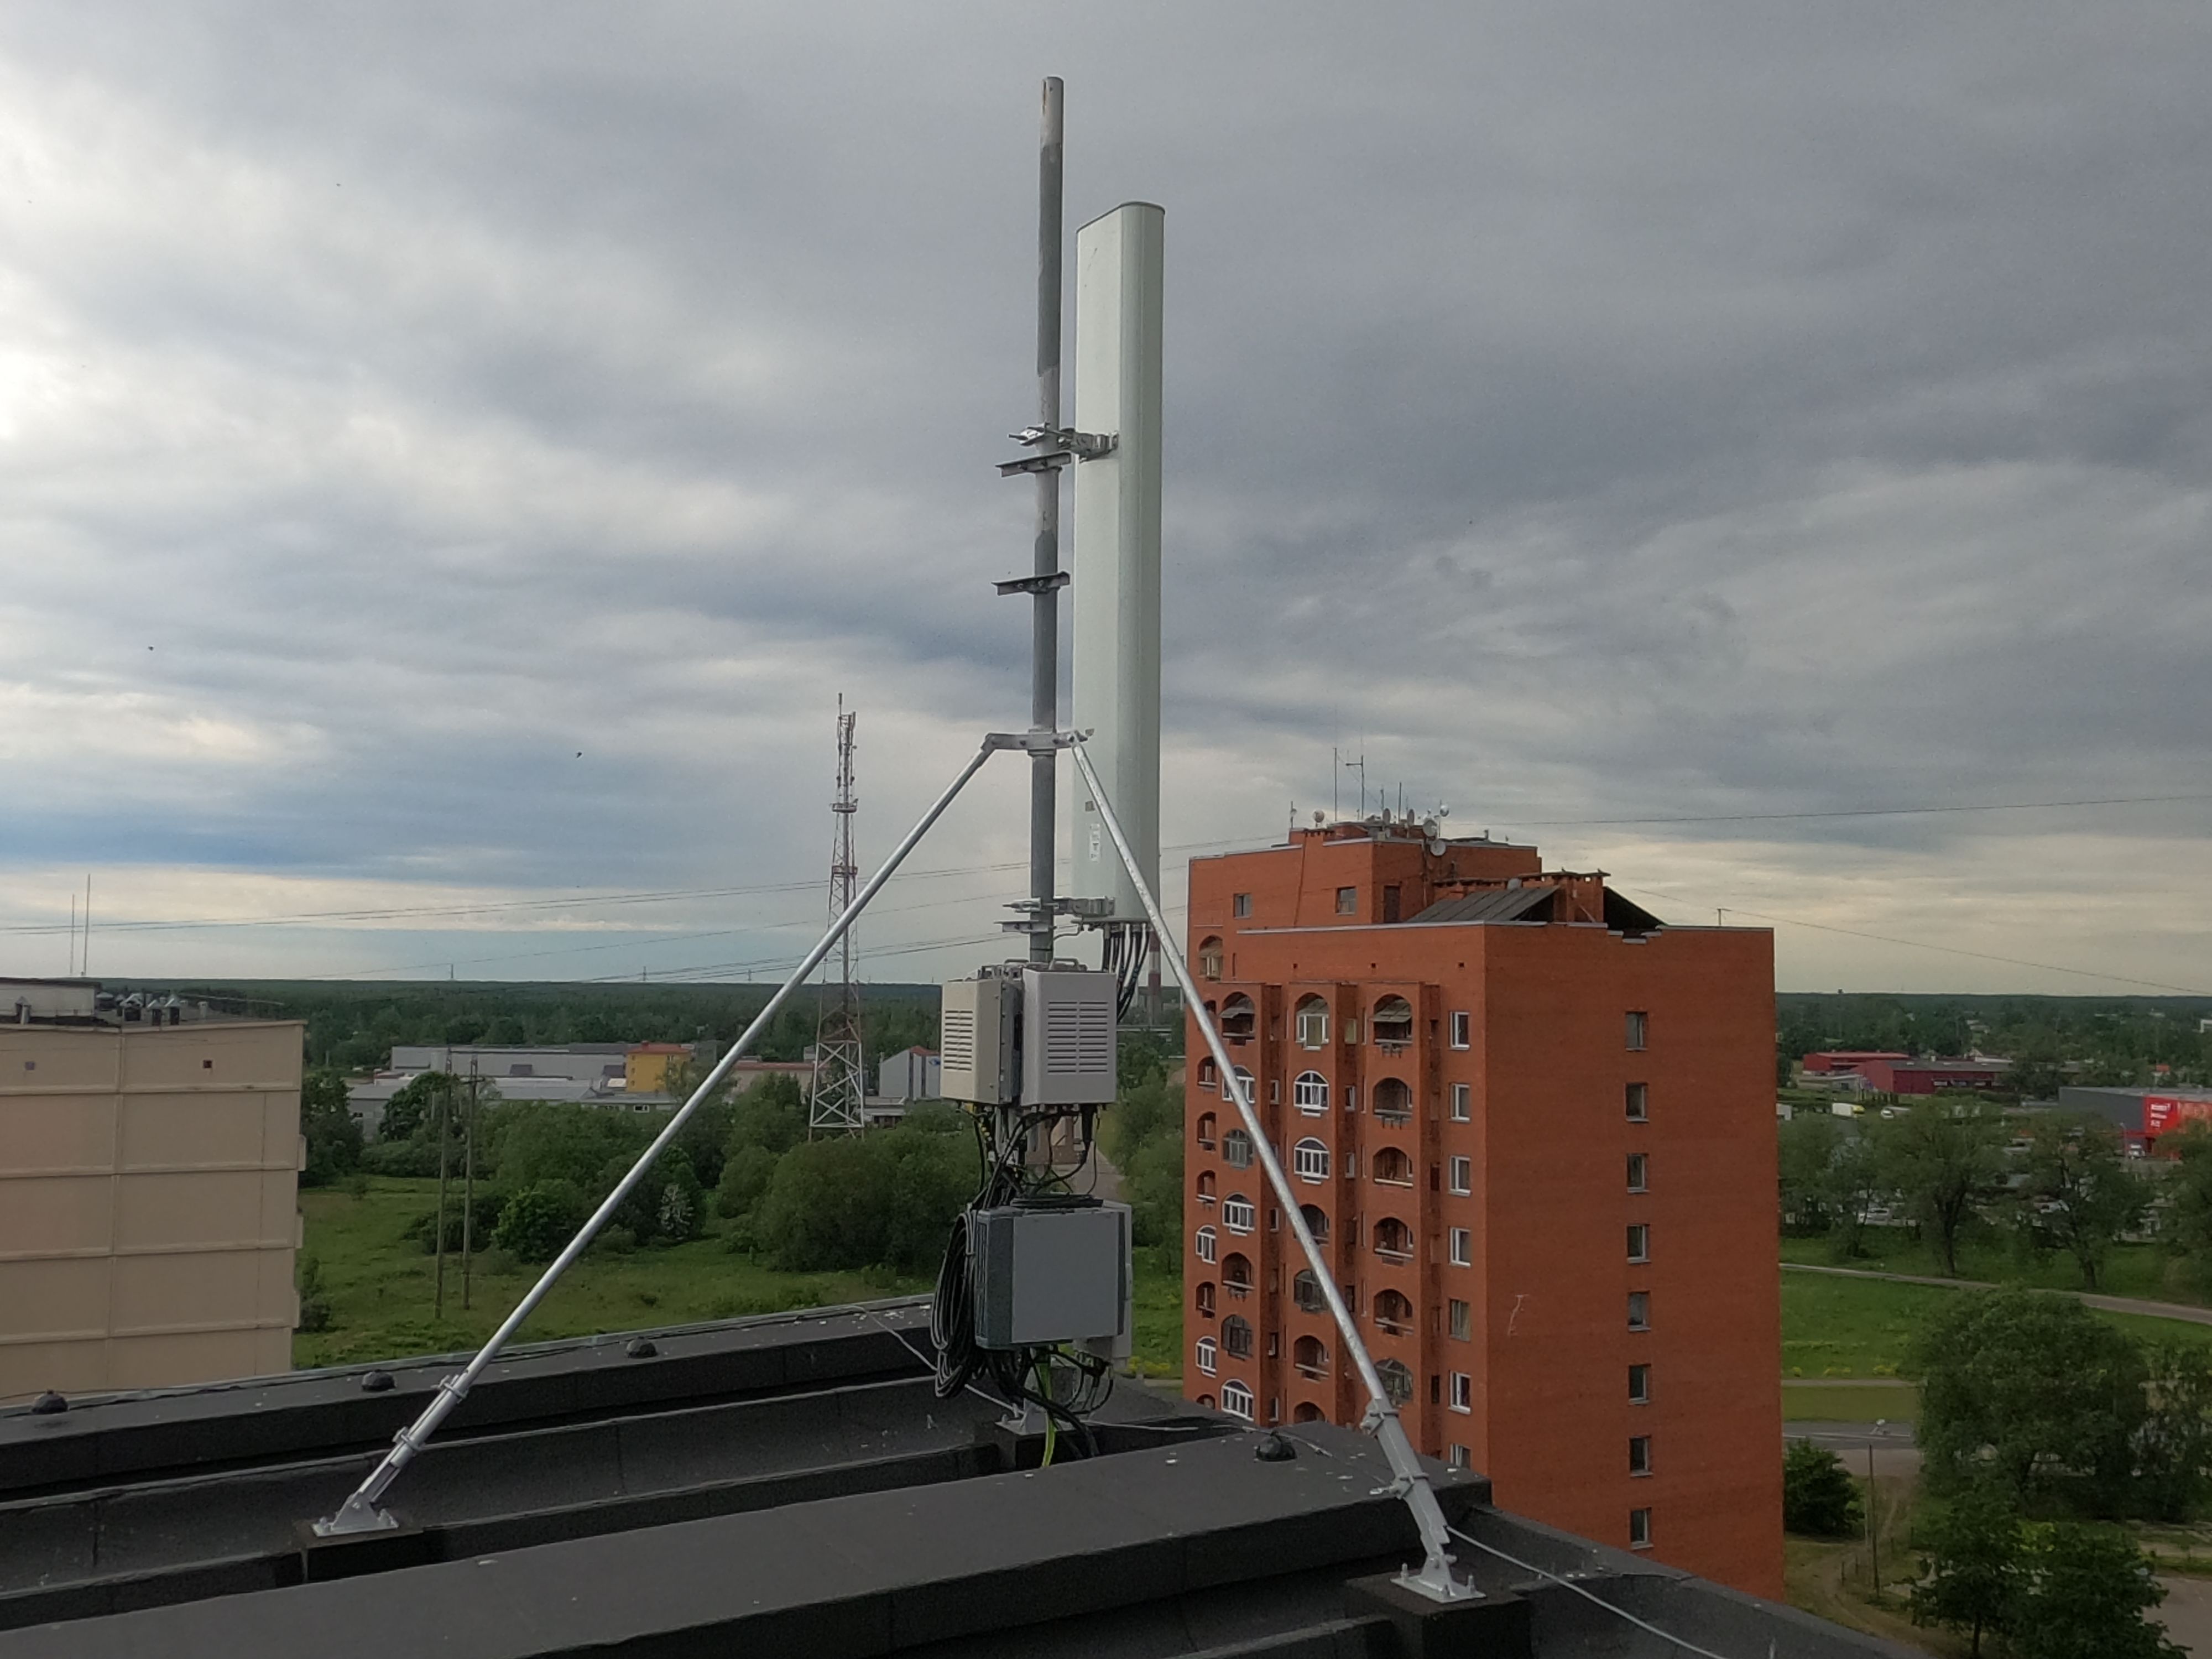 Так выглядит антенна TELE 2 на крыше дома по ул. Ислицес, 5. Каждый месяц дом получает от оператора по 350 евро